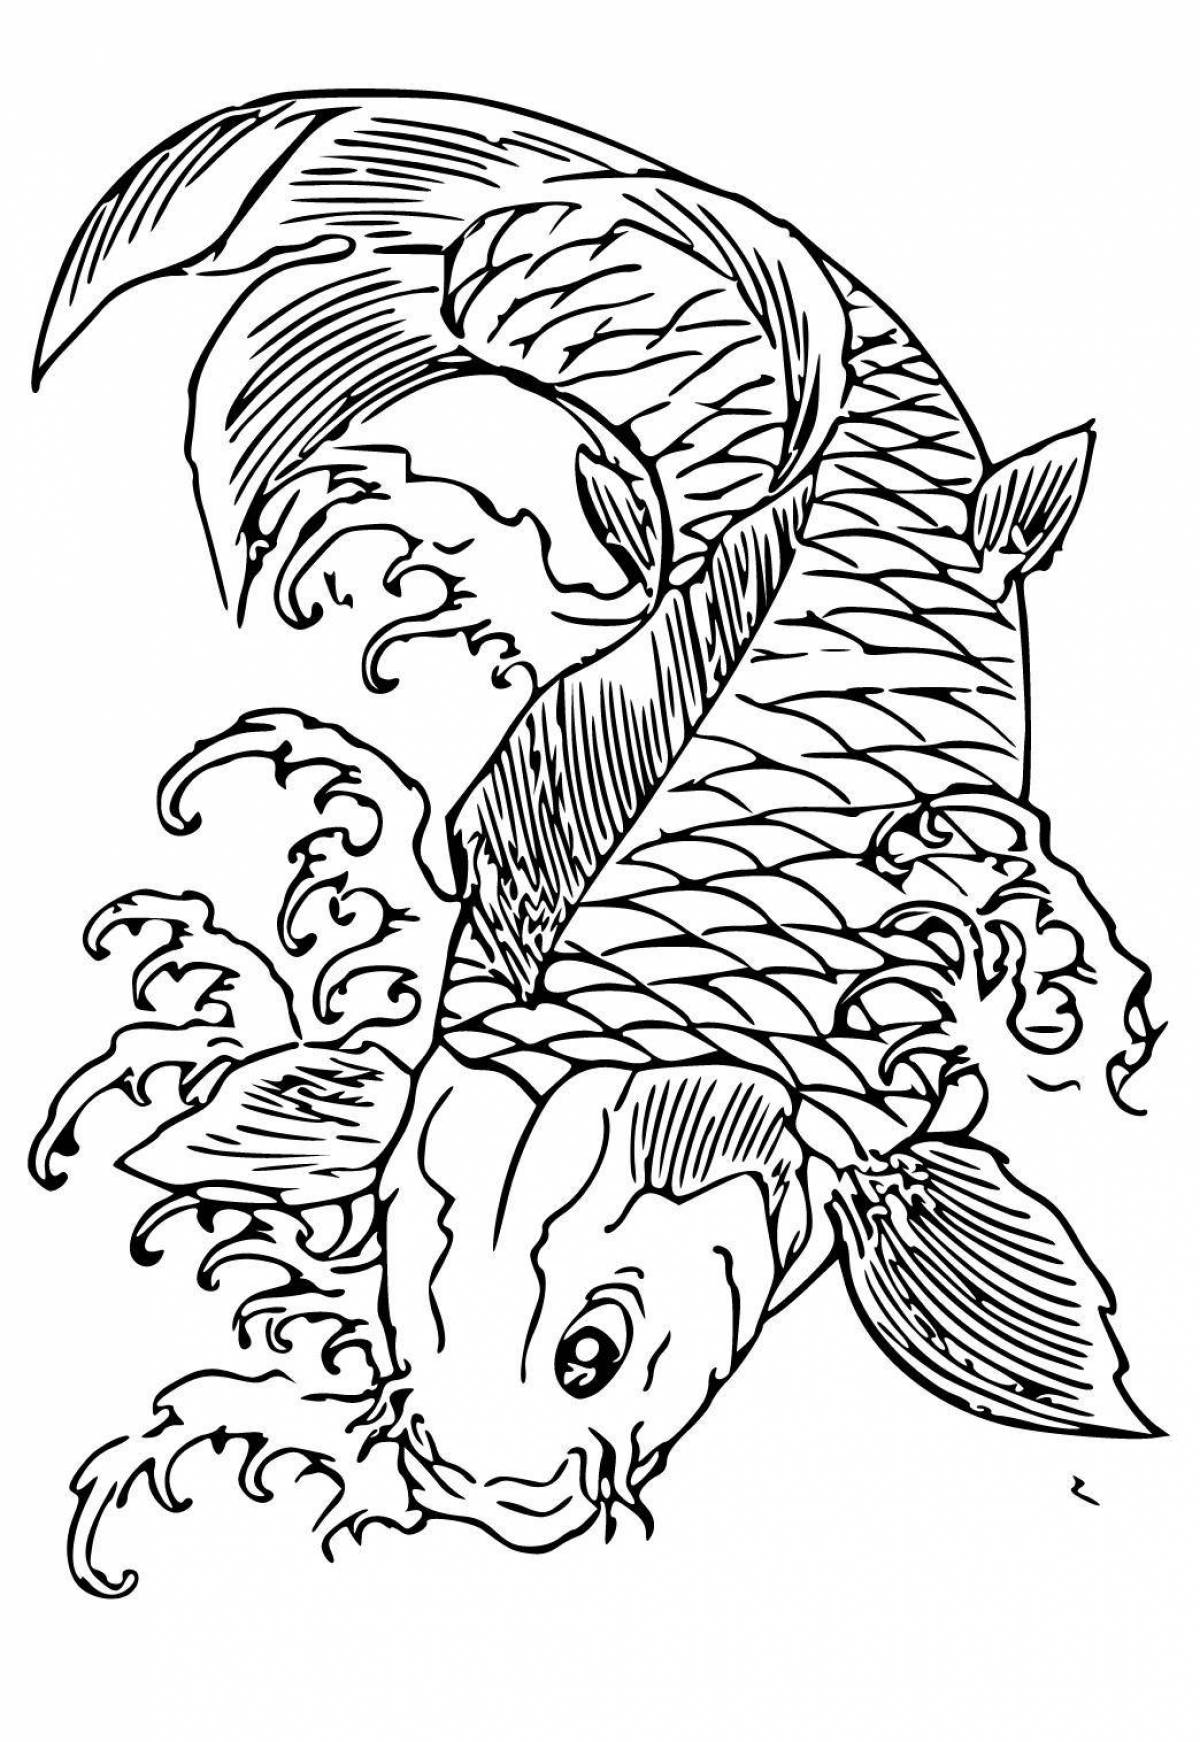 Раскраска очаровательная рыба-мандаринка